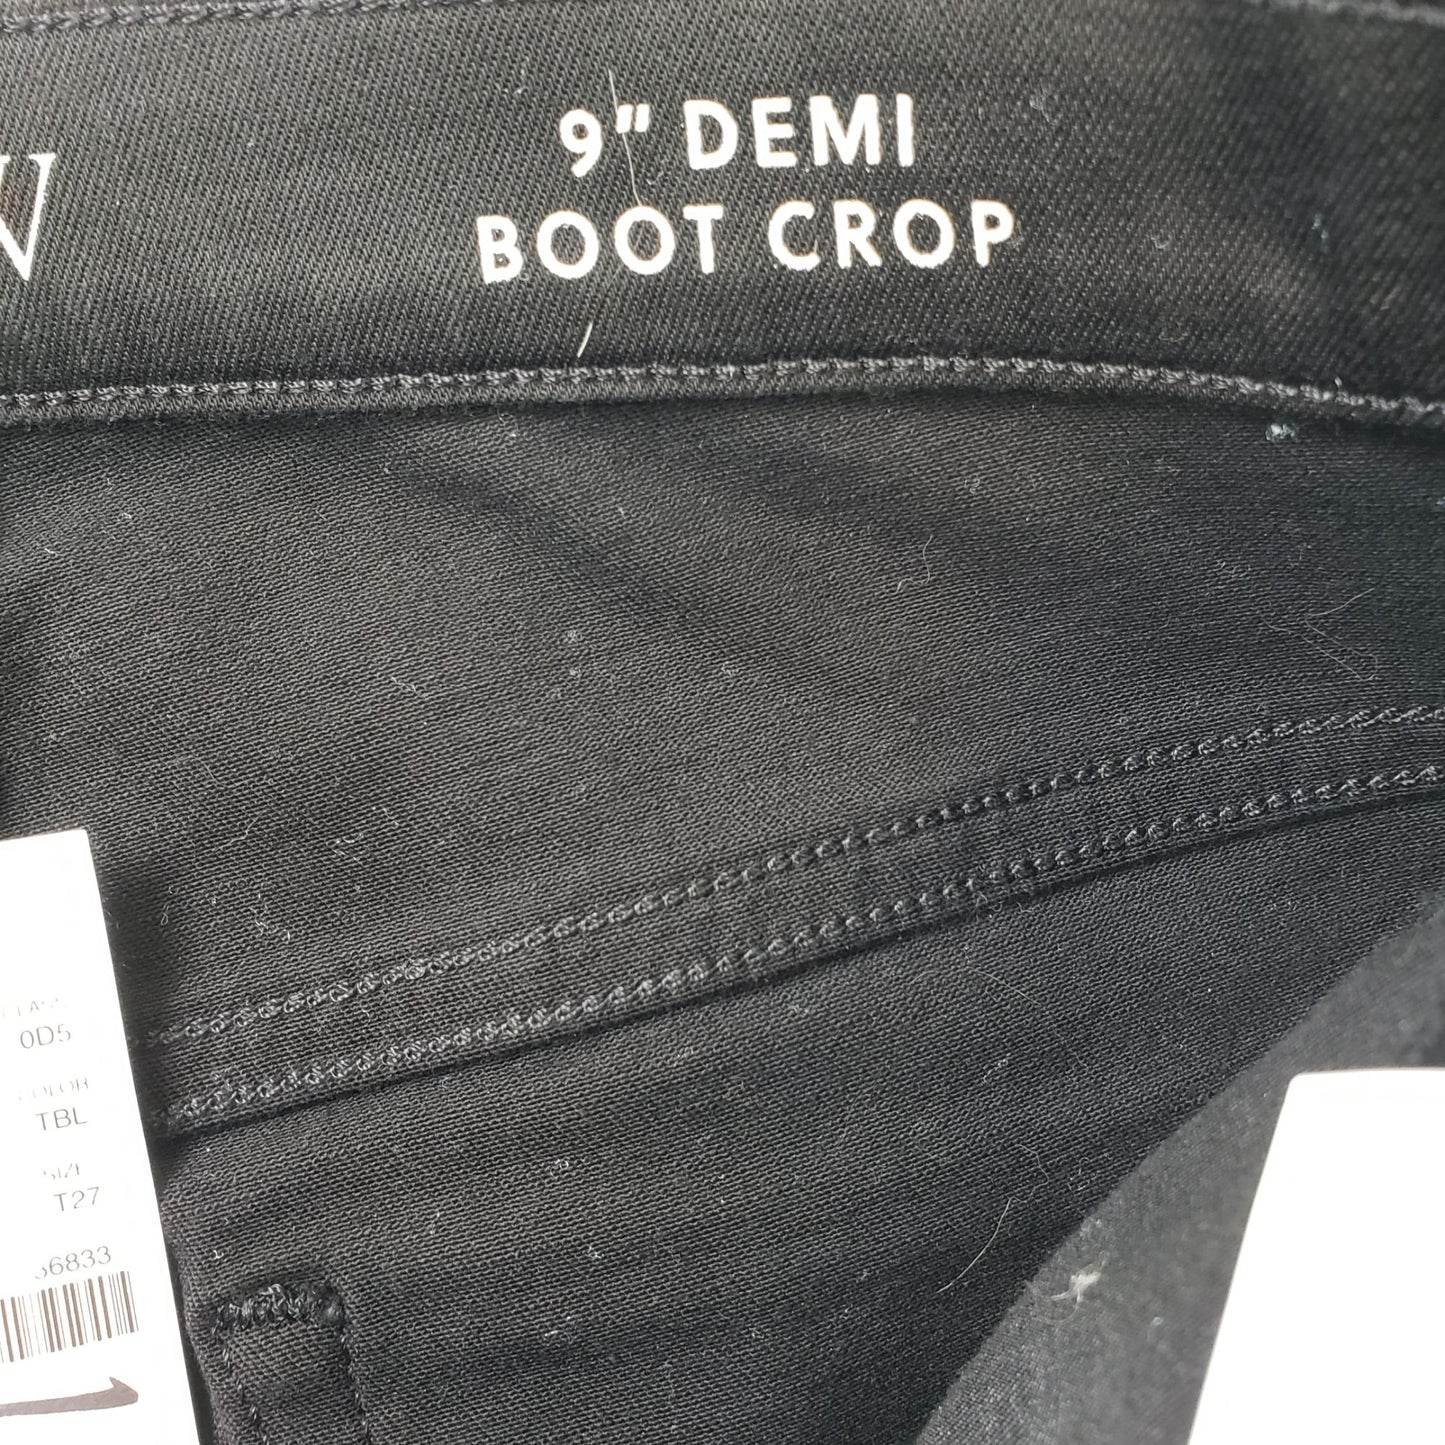 NWT J. Crew 9" Demi Boot Crop Jeans Size 27 Tall